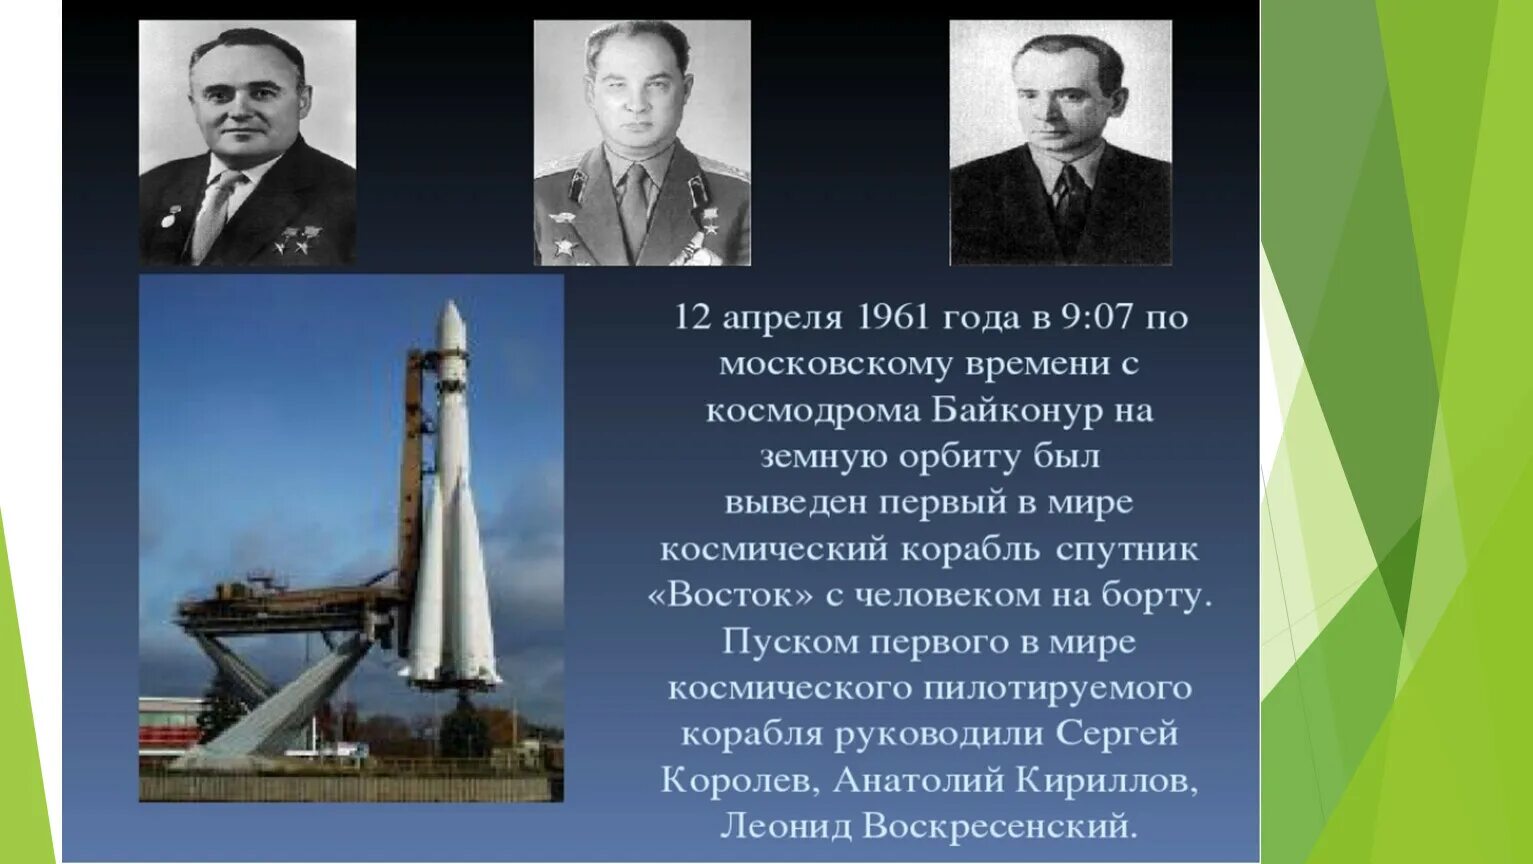 Первый конструктор ракеты в ссср. Королев косми́ческий кора́бль «Восто́к-1».